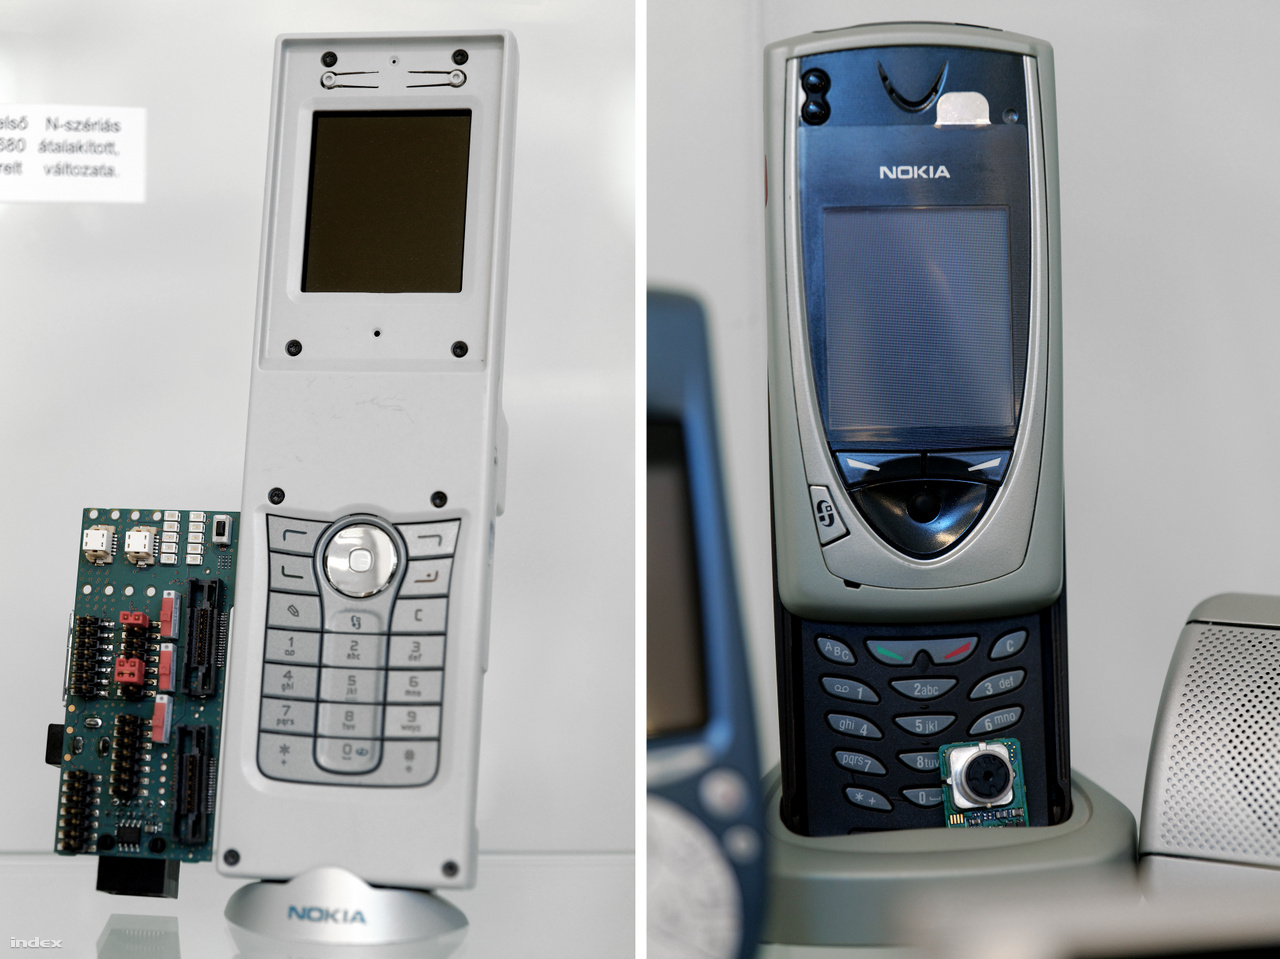 Balra: Nokia N90 prototípus, a finn gyártó egyik első okostelefonjának fejlesztői változata 2005-ből. A festetlen műanyag burkolat funkciója mindössze annyi, hogy egyben tartsa a telefont, így sem SIM kártyát behelyezni, sem összecsukni nem lehet. Az oldalán kilógó áramköri lapon a
                        programozáshoz szükséges csatlakozók találhatók. A készülék a kiállítás társrendezője,
                        Csernák Márton magángyűjteményéből származik. Jobbra a 2002-es Nokia 7650, az első színes Nokia telefonok egyike. Ez már 6.1-es Symbian operációs rendszerrel működött, volt beépített kamerája és a menüben joystickkel lehetett lépkedni. "Nekünk csak Zutyufon. Az Index legendás tényfeltáró riporterének, Bogád Zoltánnak ilyen telefonja volt sokáig – rengeteg mobilos fotót és tudósítást köszönhettünk Zutyunak és akkor bámulatosan hipermodern hatást keltő telefonjának" – Nagy Attila Károly.)